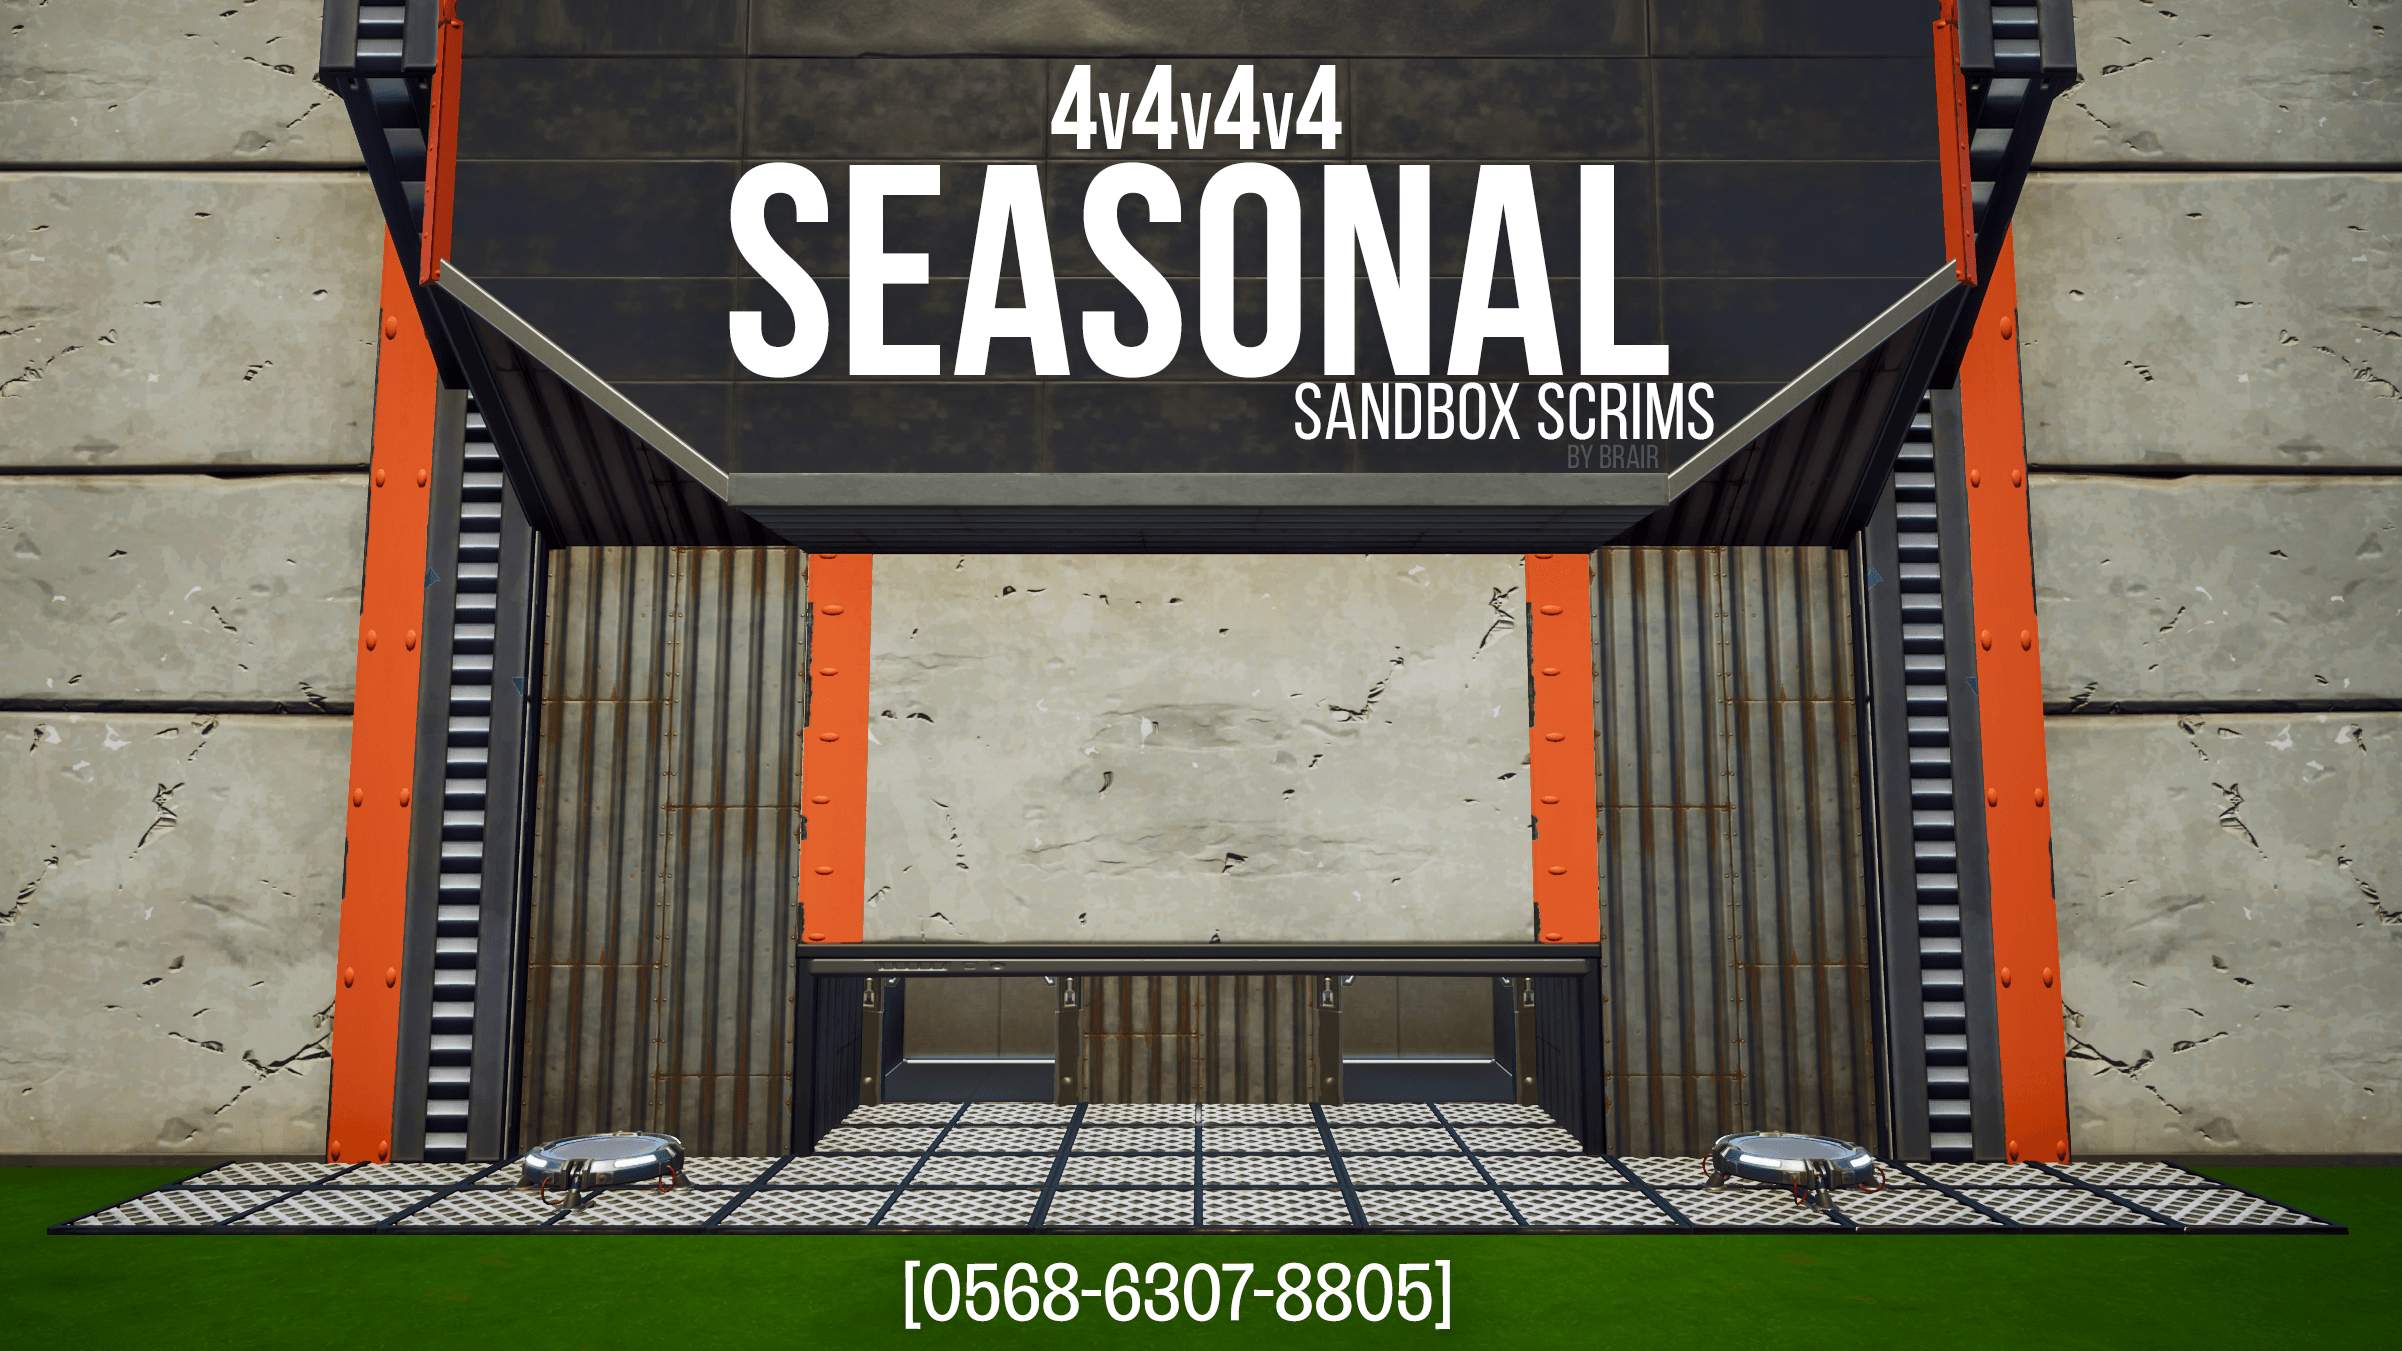 SEASON 5 SANDBOX SCRIMS [4V4V4V4]